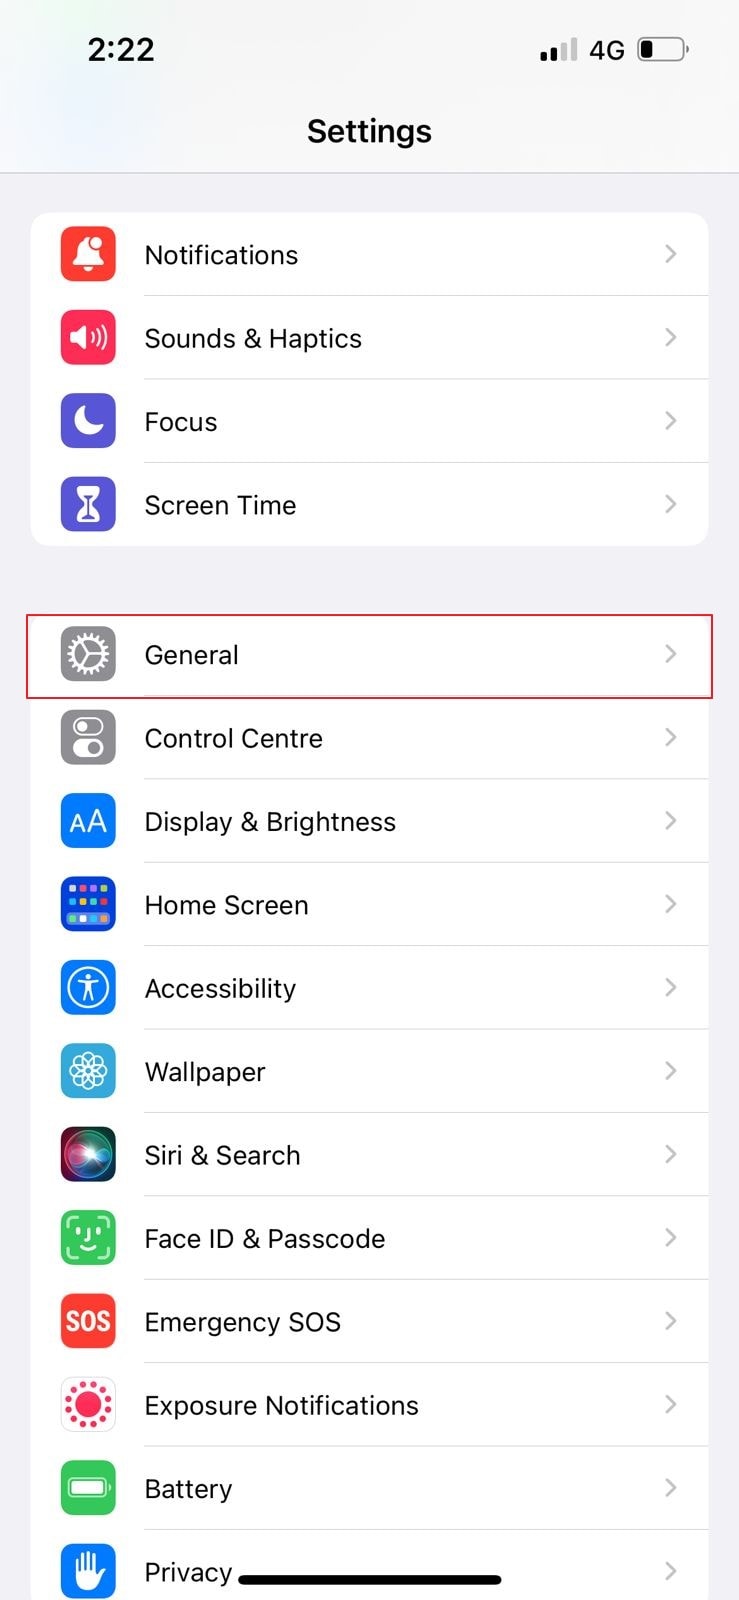 access general settings